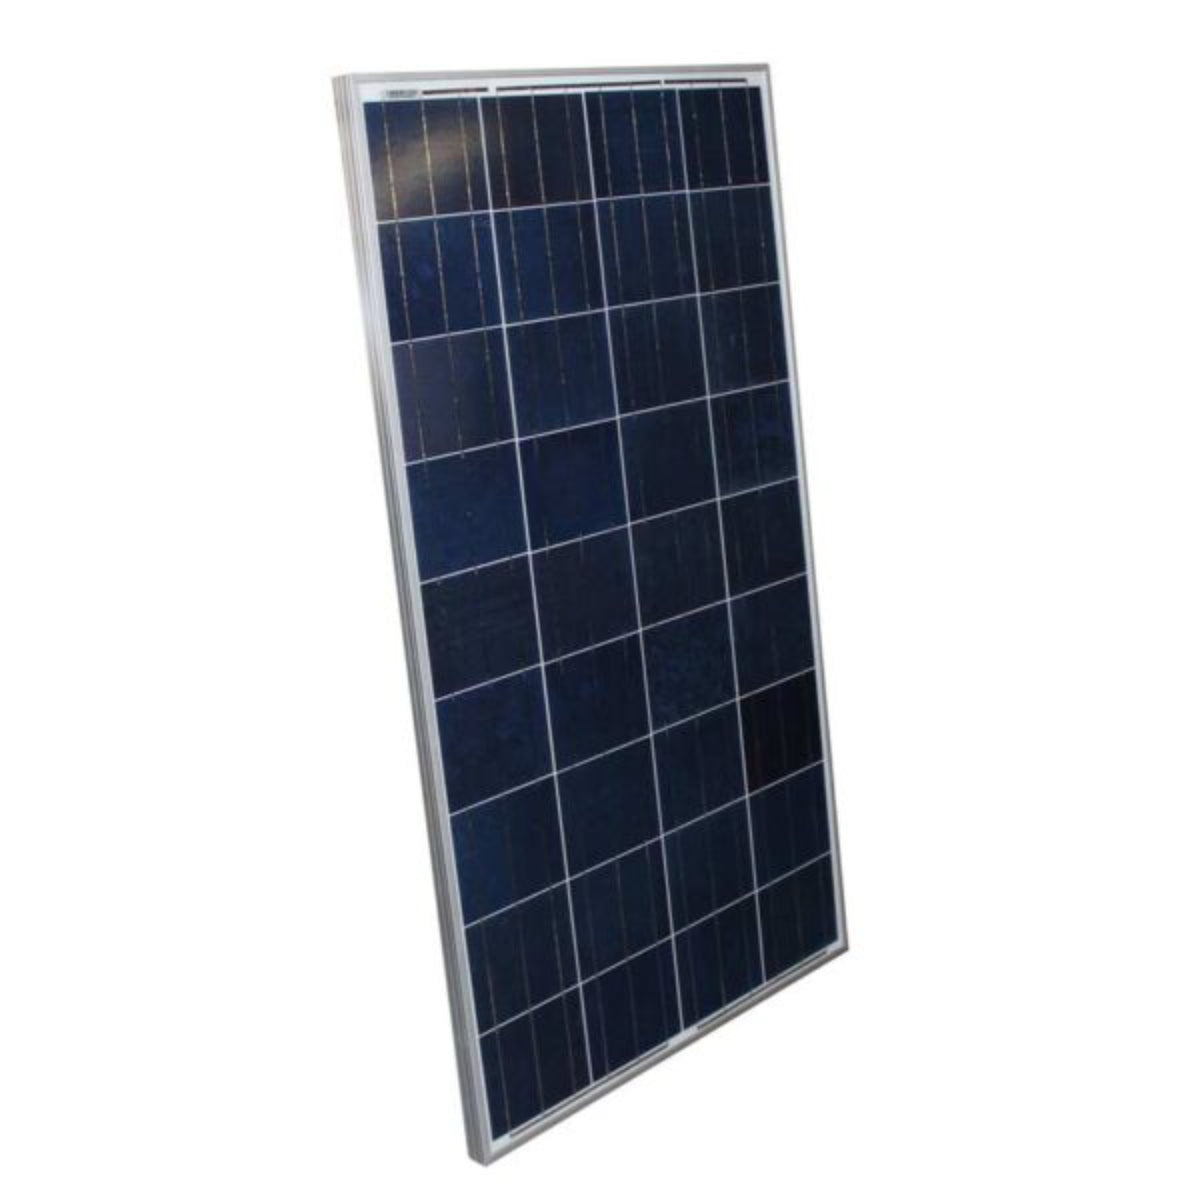 AIMS Power | 190 Watt Monocrystalline Solar Panel